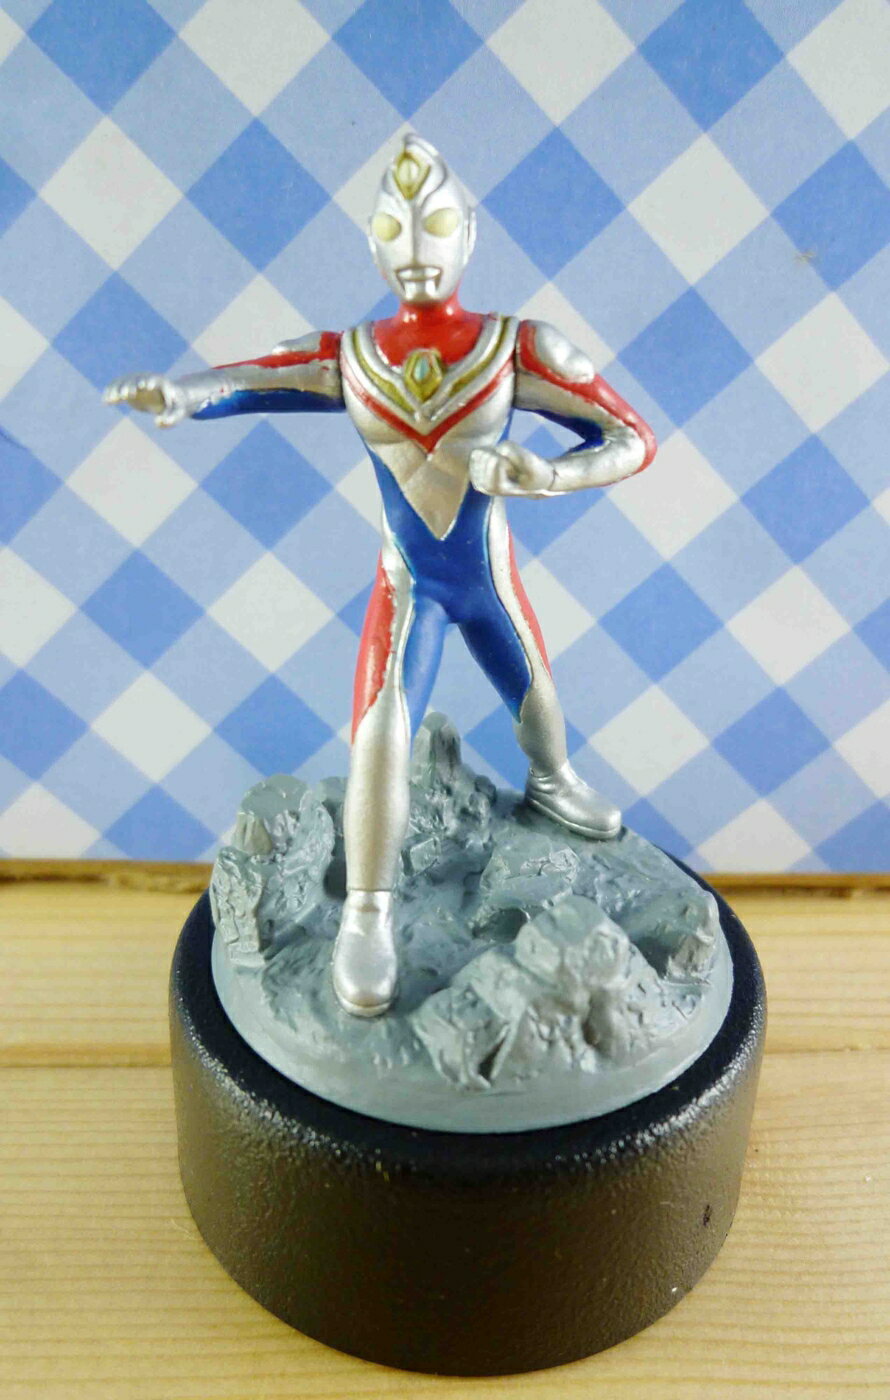 【震撼精品百貨】Ultraman 鹹蛋超人 銷筆器-弓步 震撼日式精品百貨